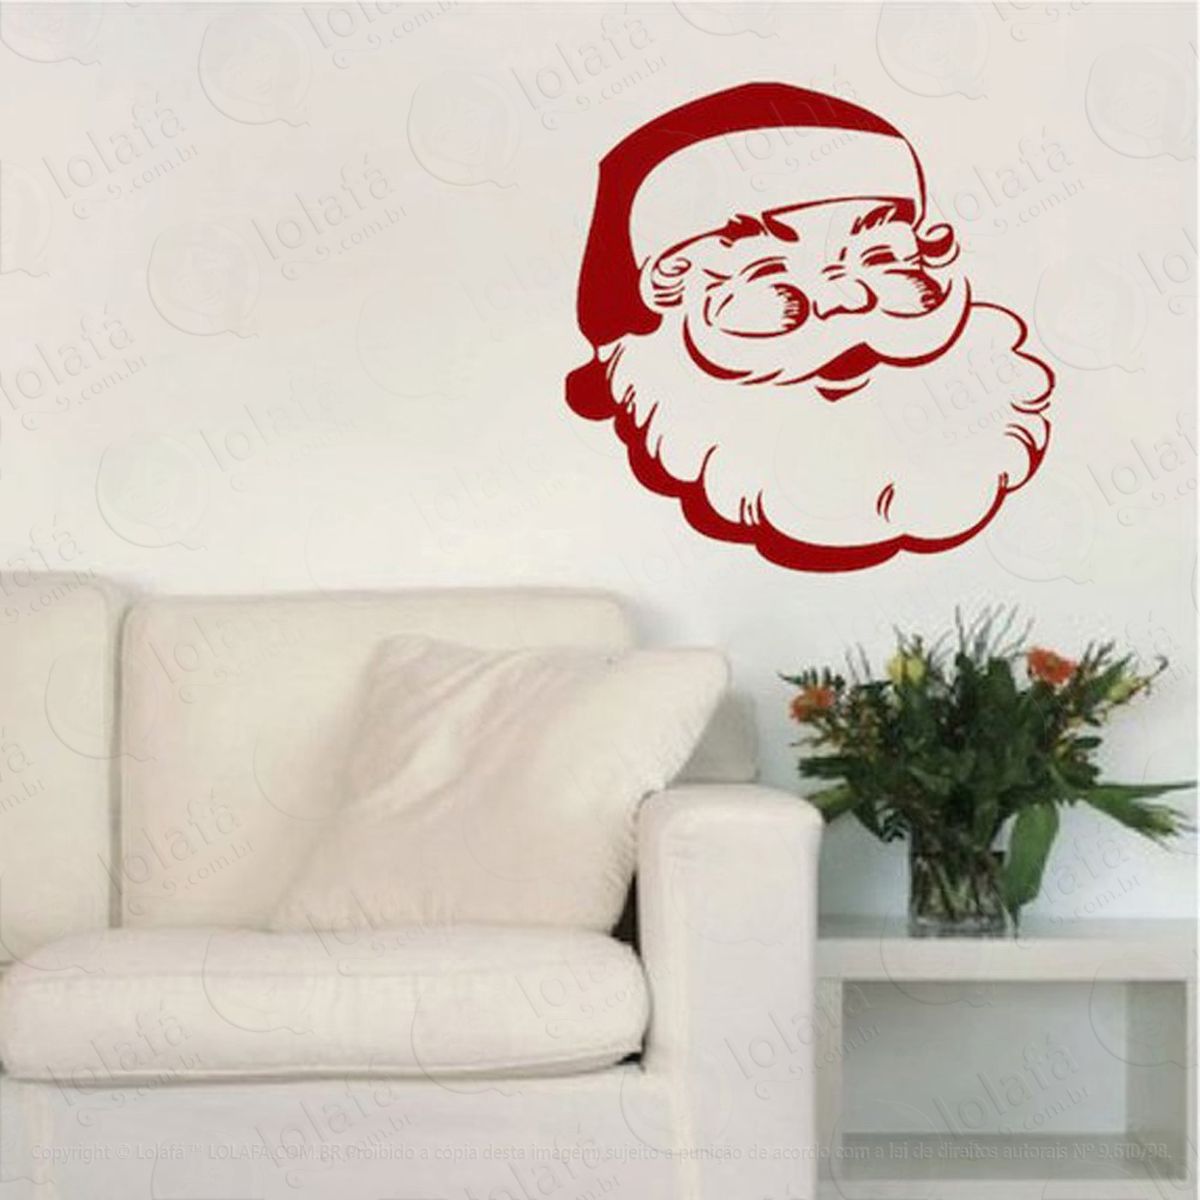 rosto noel adesivo de natal para vitrine, parede, porta de vidro - decoração natalina mod:239